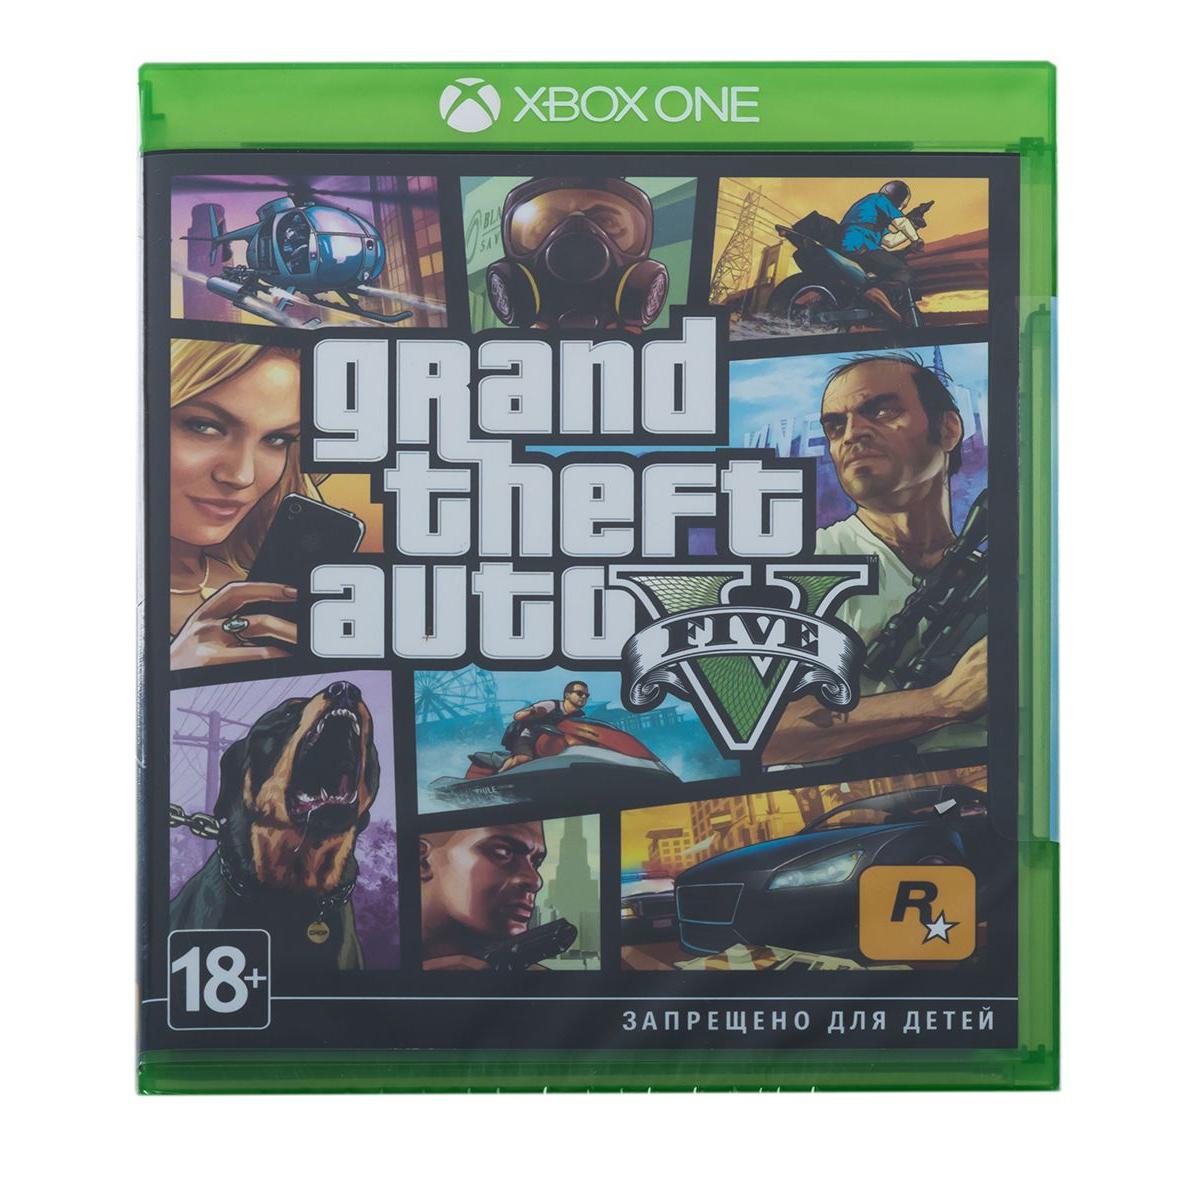 Игра икс бокс 5. Диск Grand Theft auto 5 для Xbox one. GTA 5 диск для х бокс уан. GTA 5 Xbox one диск. ГТА 4 на Икс бокс оне.